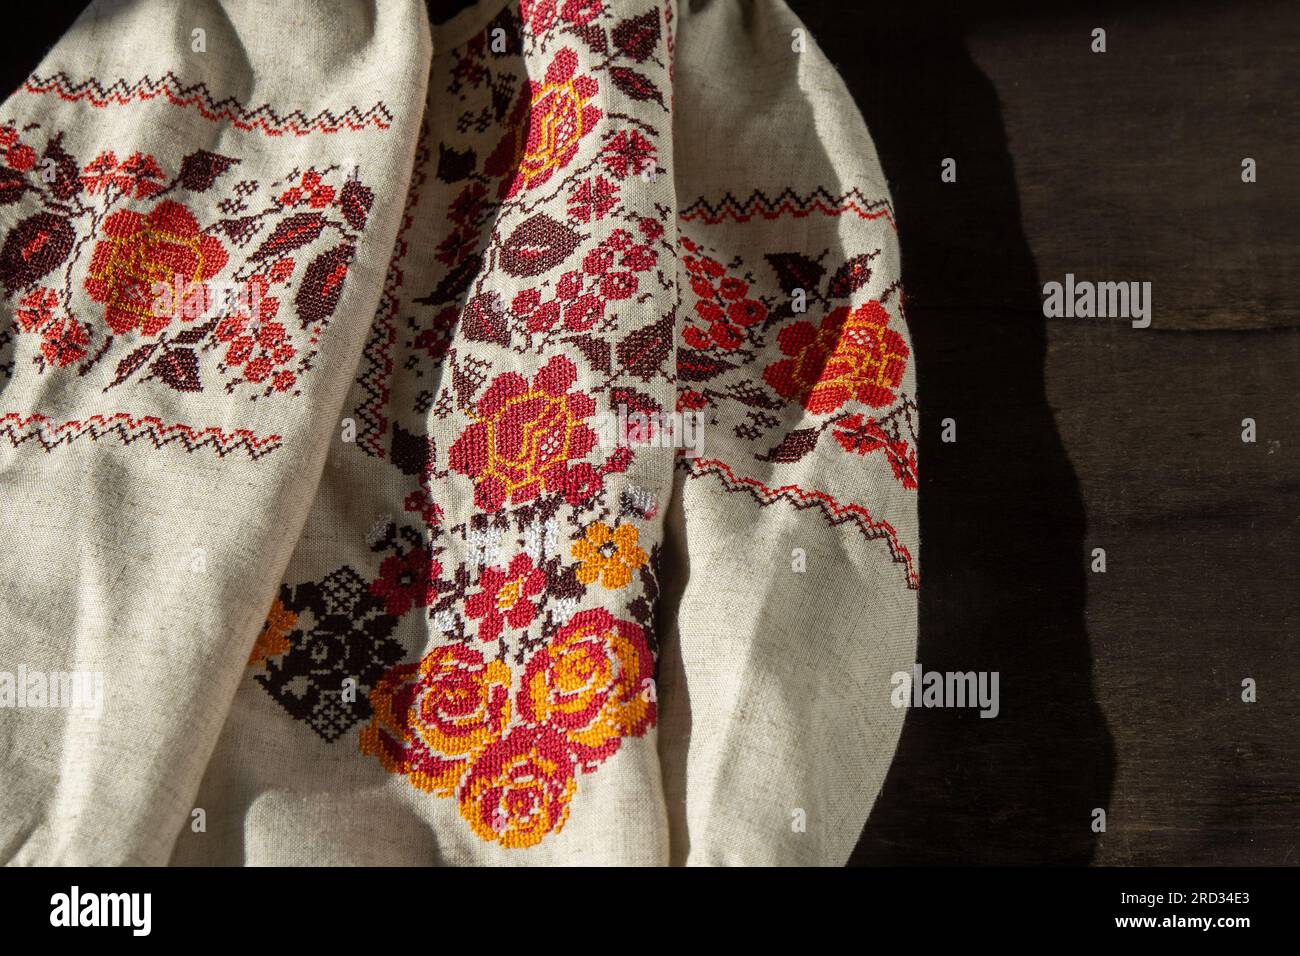 Maglietta ricamata con abiti ucraini. Sfondo rosso arancione e nero. Vyshyvanka è un simbolo dell'Ucraina. Cucitura a croce con ricami. Punto nazionale ucraino. Simbolo dell'abbigliamento tradizionale. Foto Stock